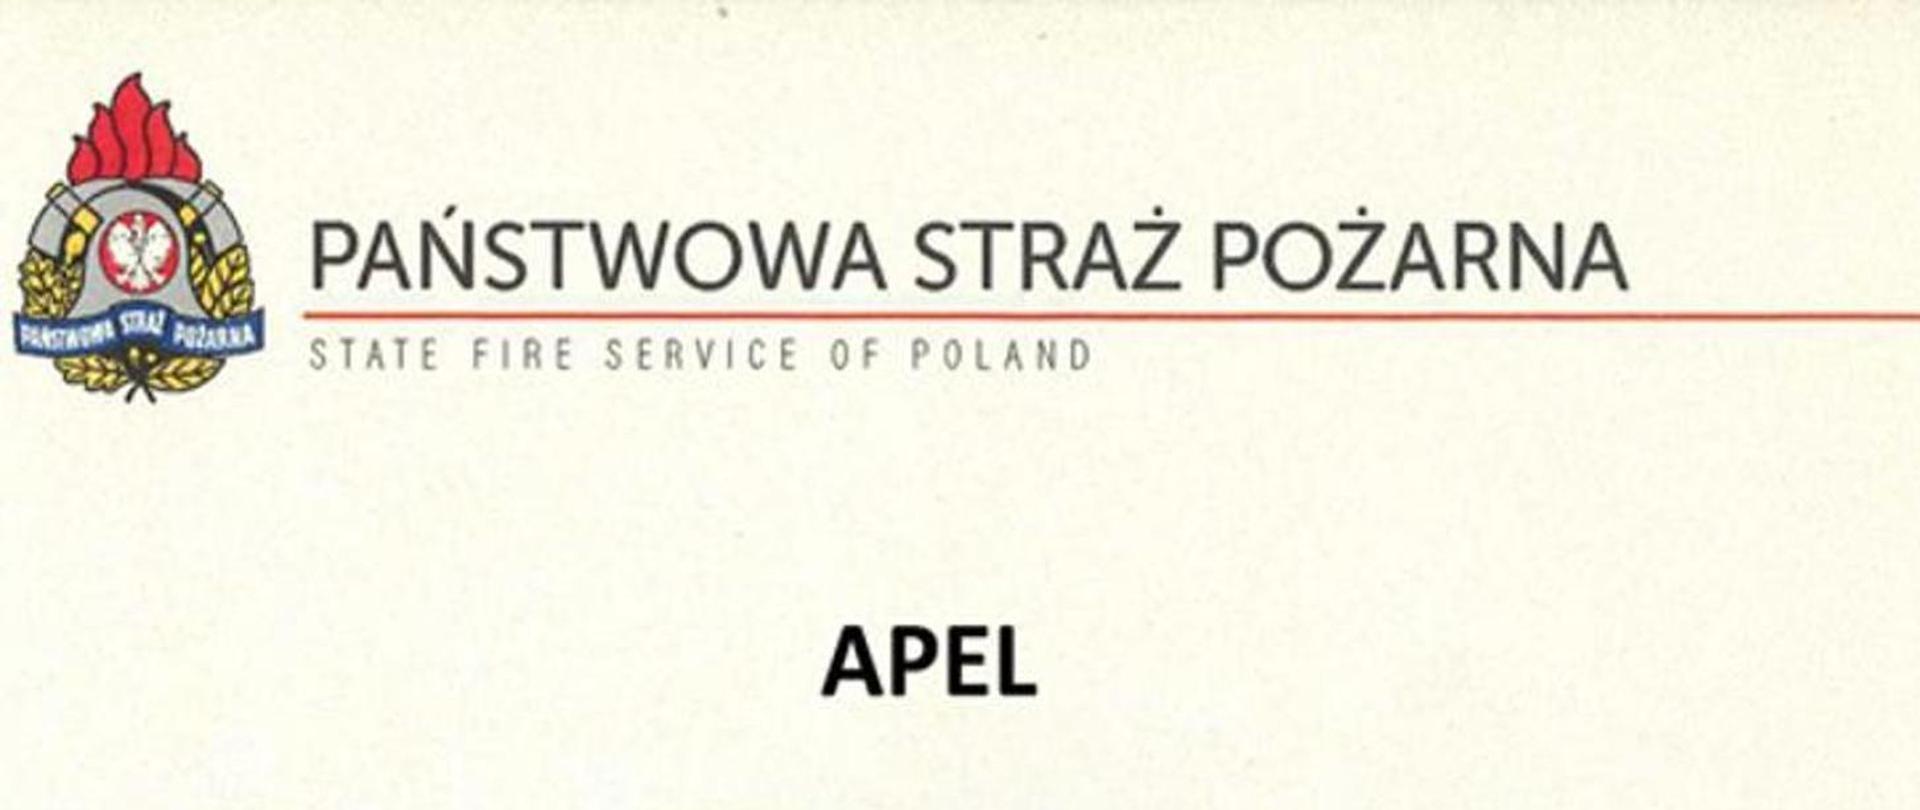 Na zdjęciu widoczne logo PSP napis po polsku i angielsku Państwowa Straż Pożarna. Poniżej napis Apel.